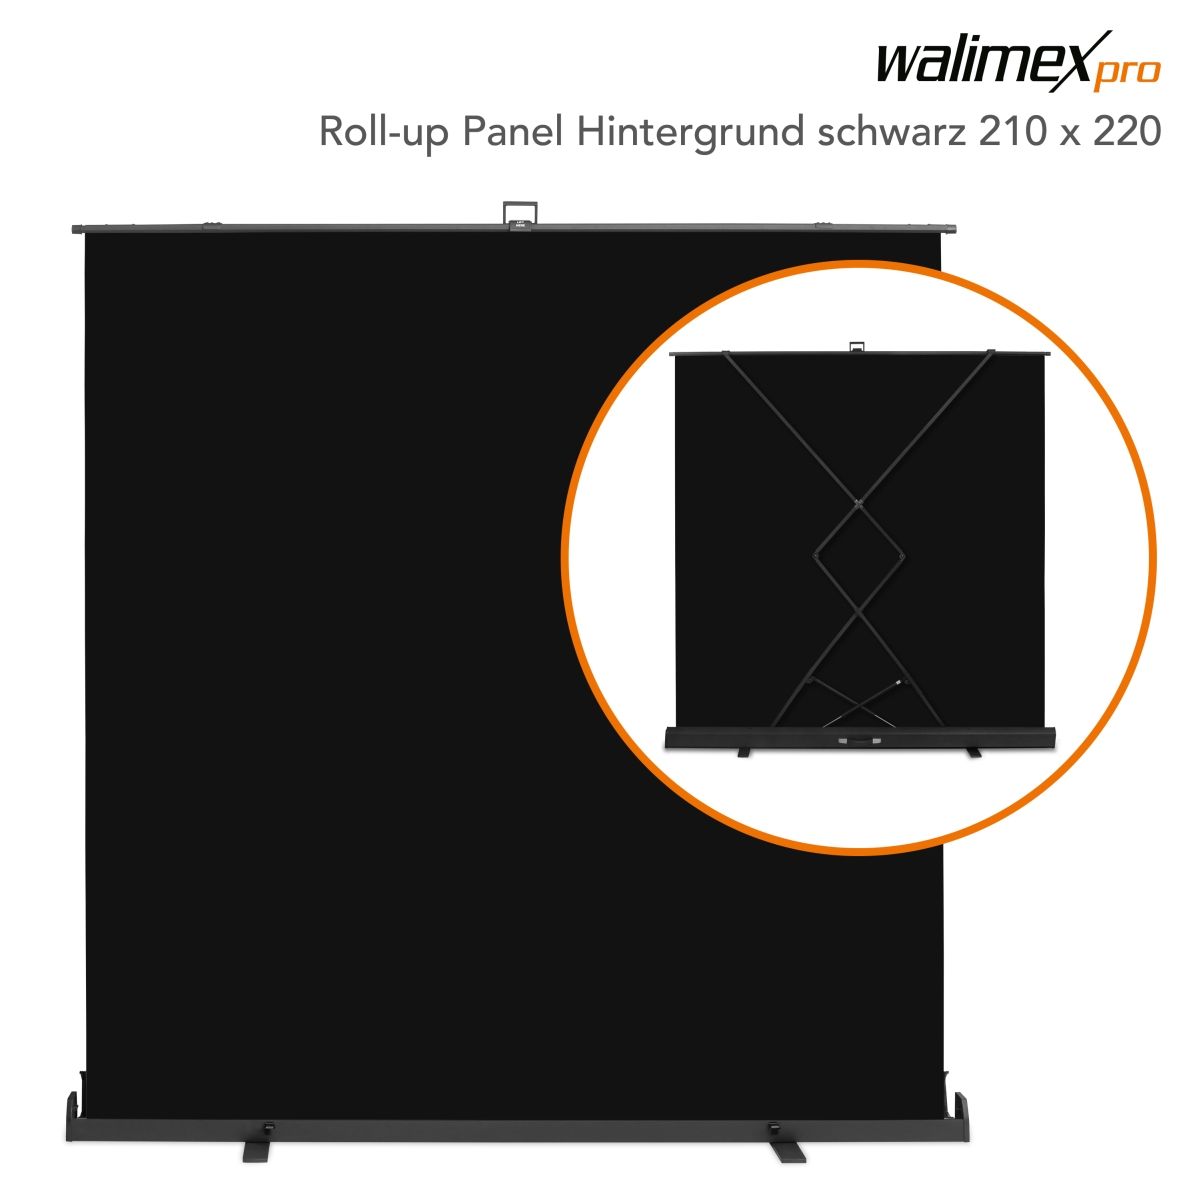 Walimex pro Roll-up Panel Hintergrund schw.210x220